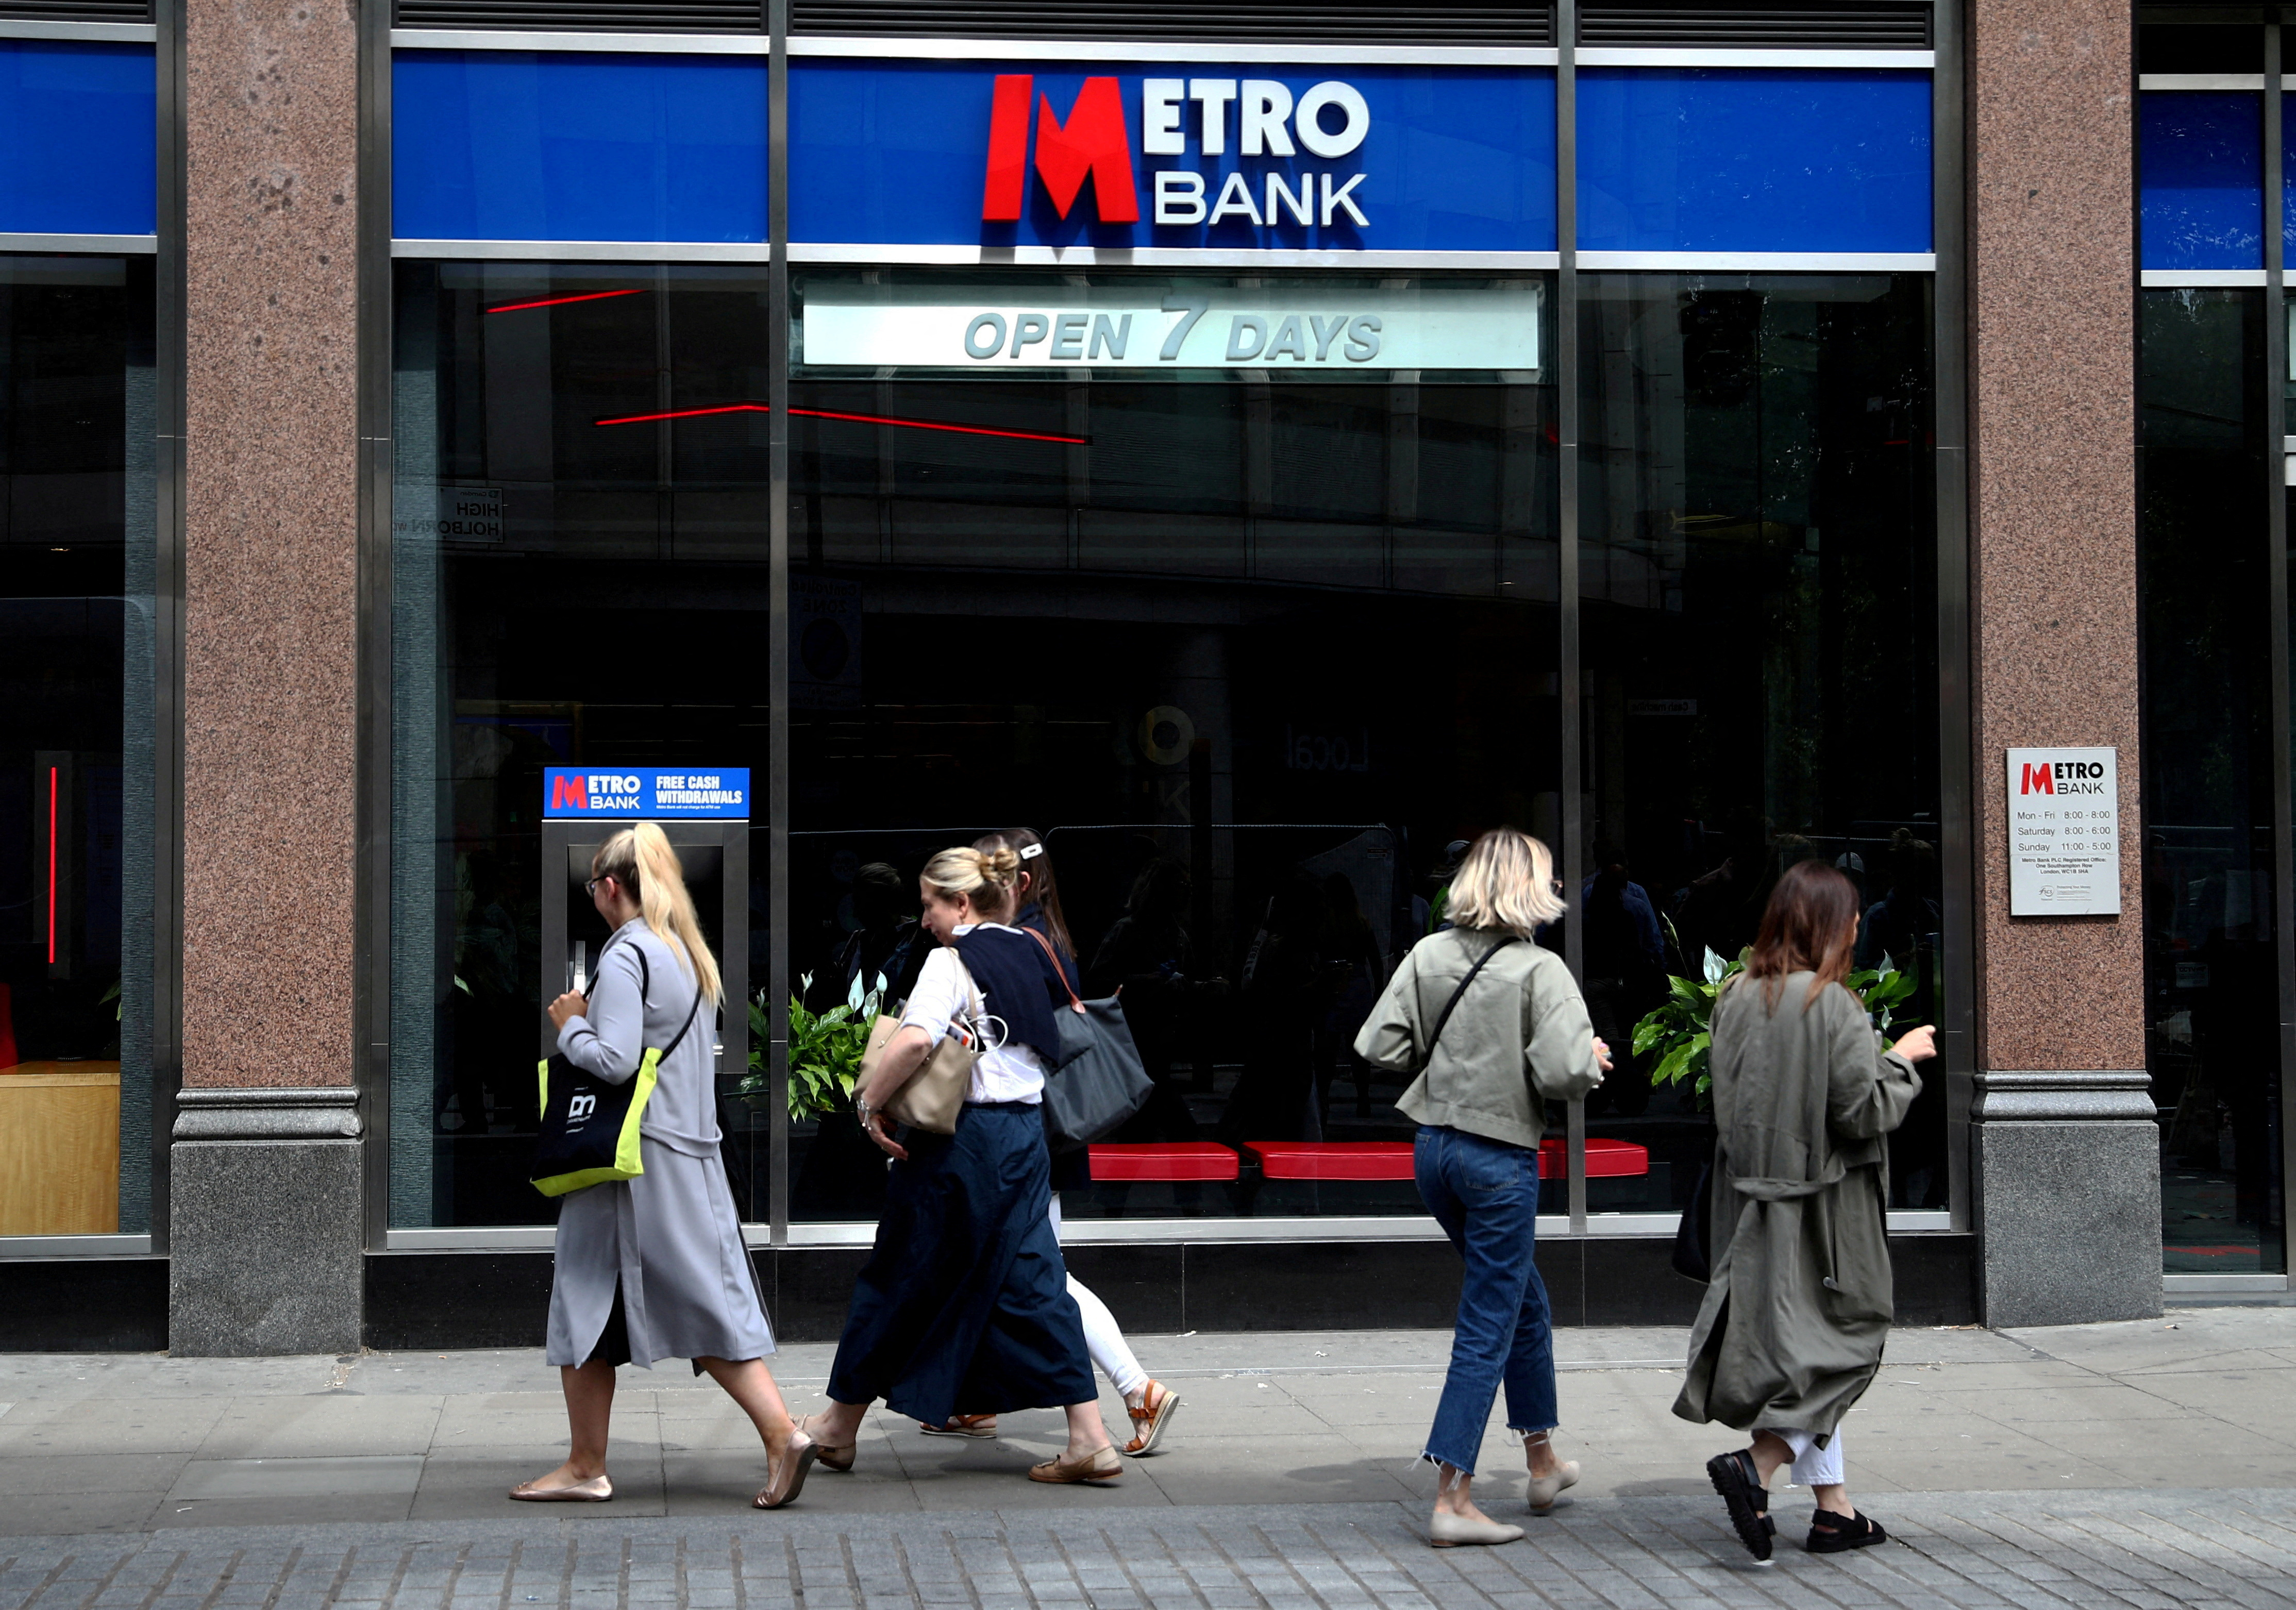 FOTO DE ARQUIVO: Pessoas passam por um banco do Metro em Londres